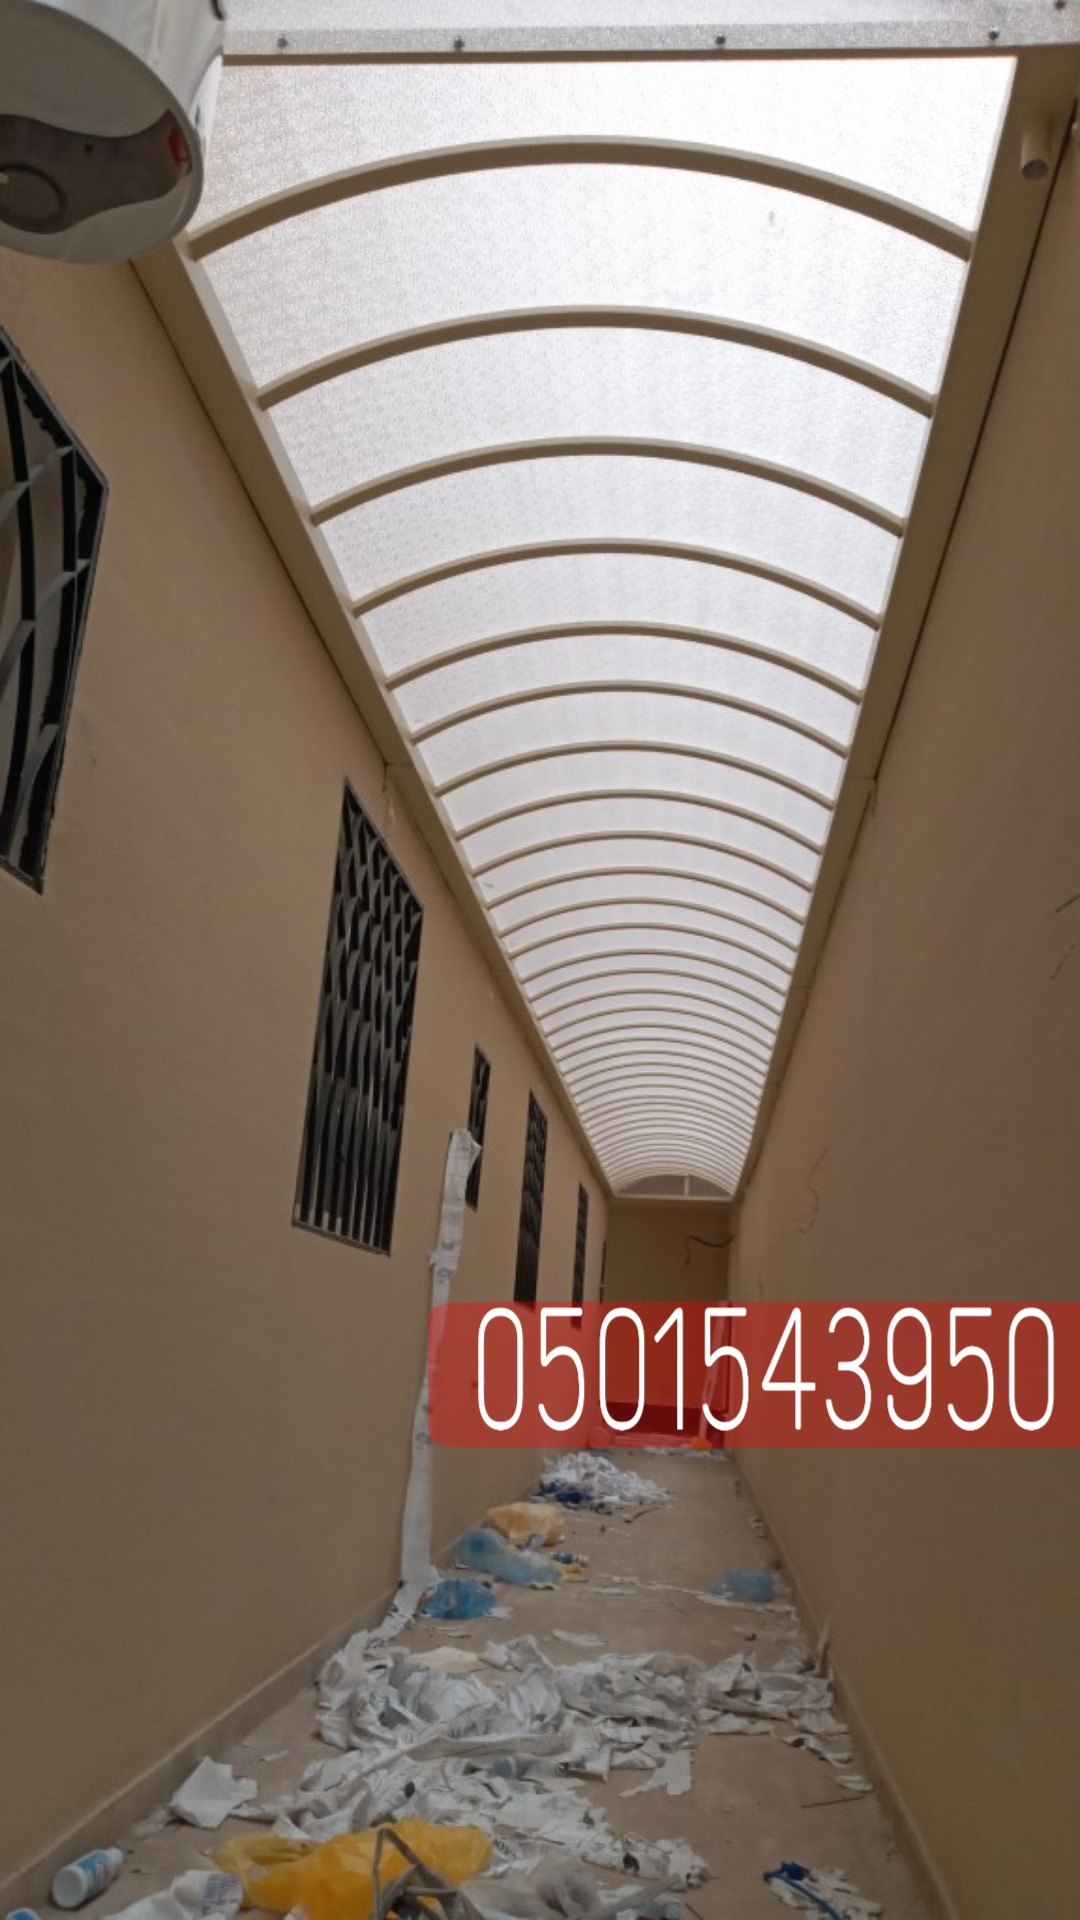 مظلات سيارات داخل البيت او خارجة في جدة , 0501543950